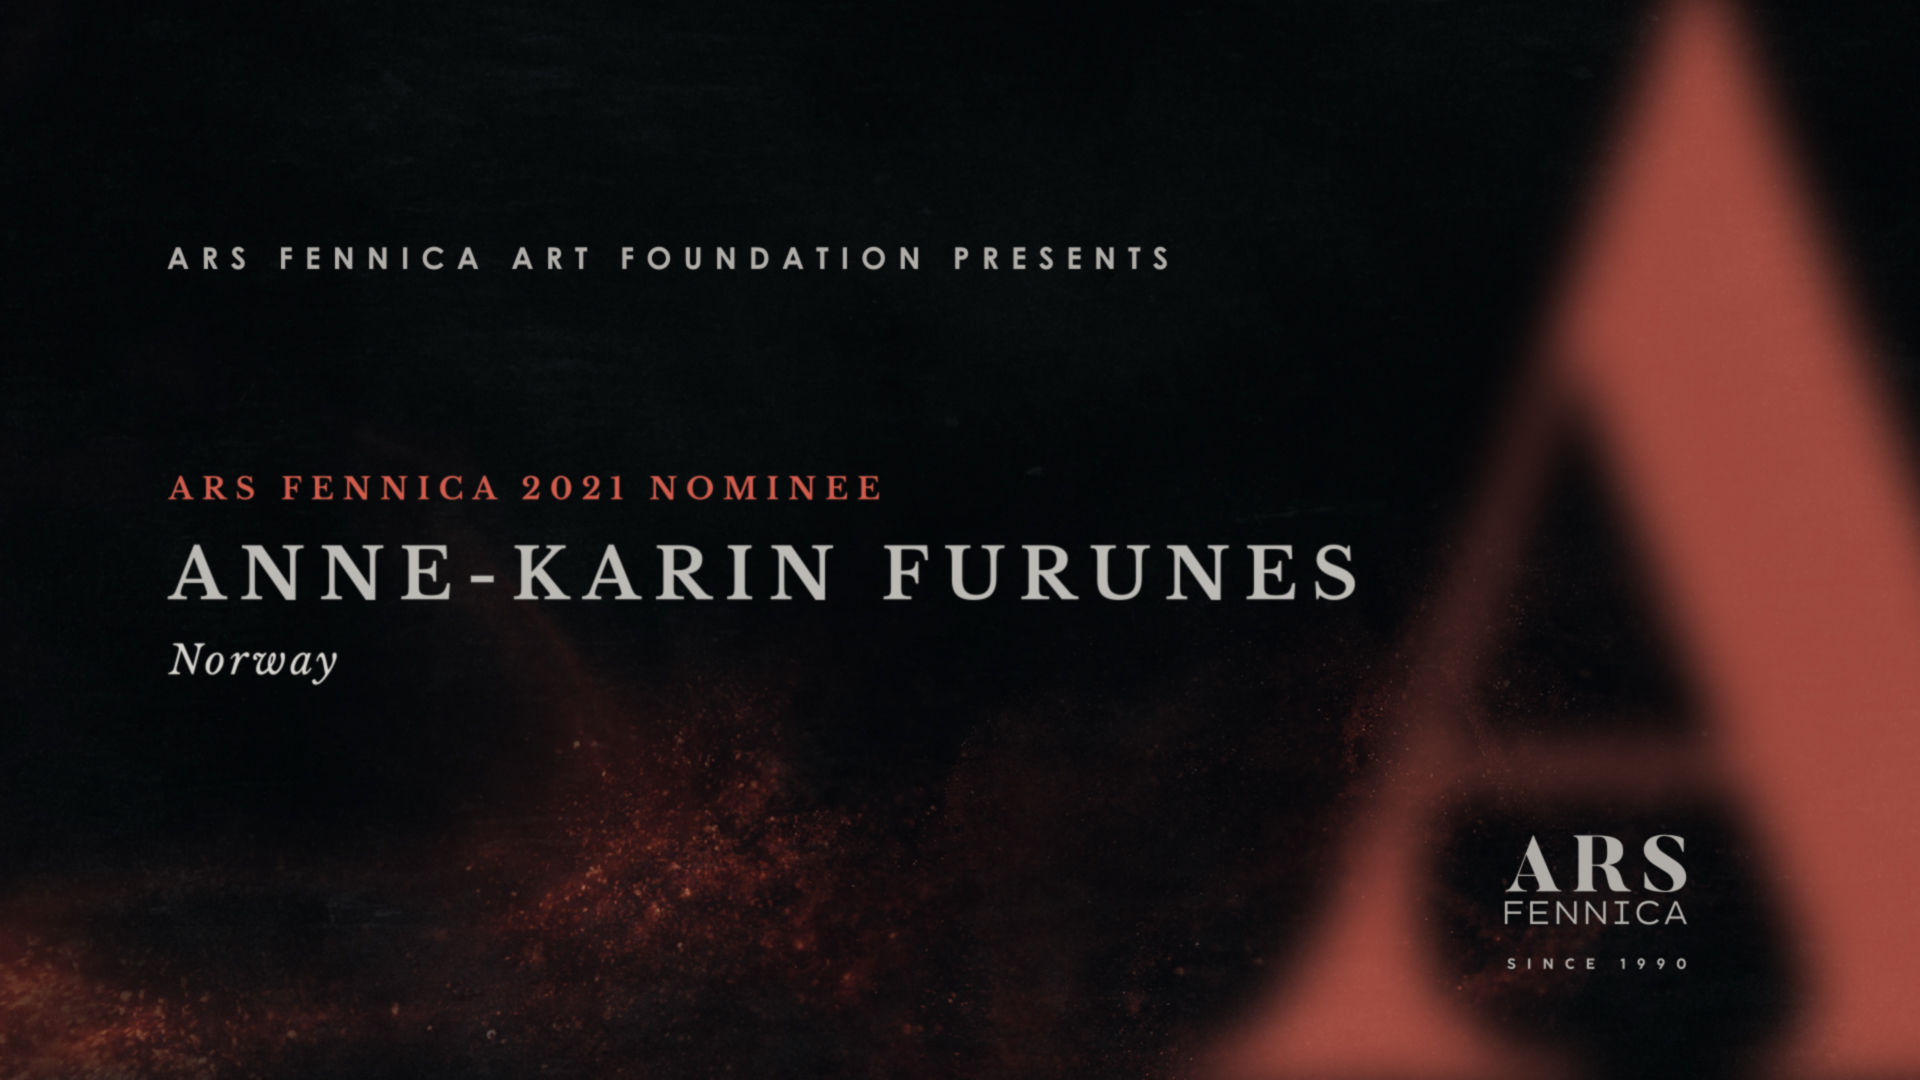 Ars Fennica 2021 Nominee Anne-Karin Furunes Artist Film Title Graphics